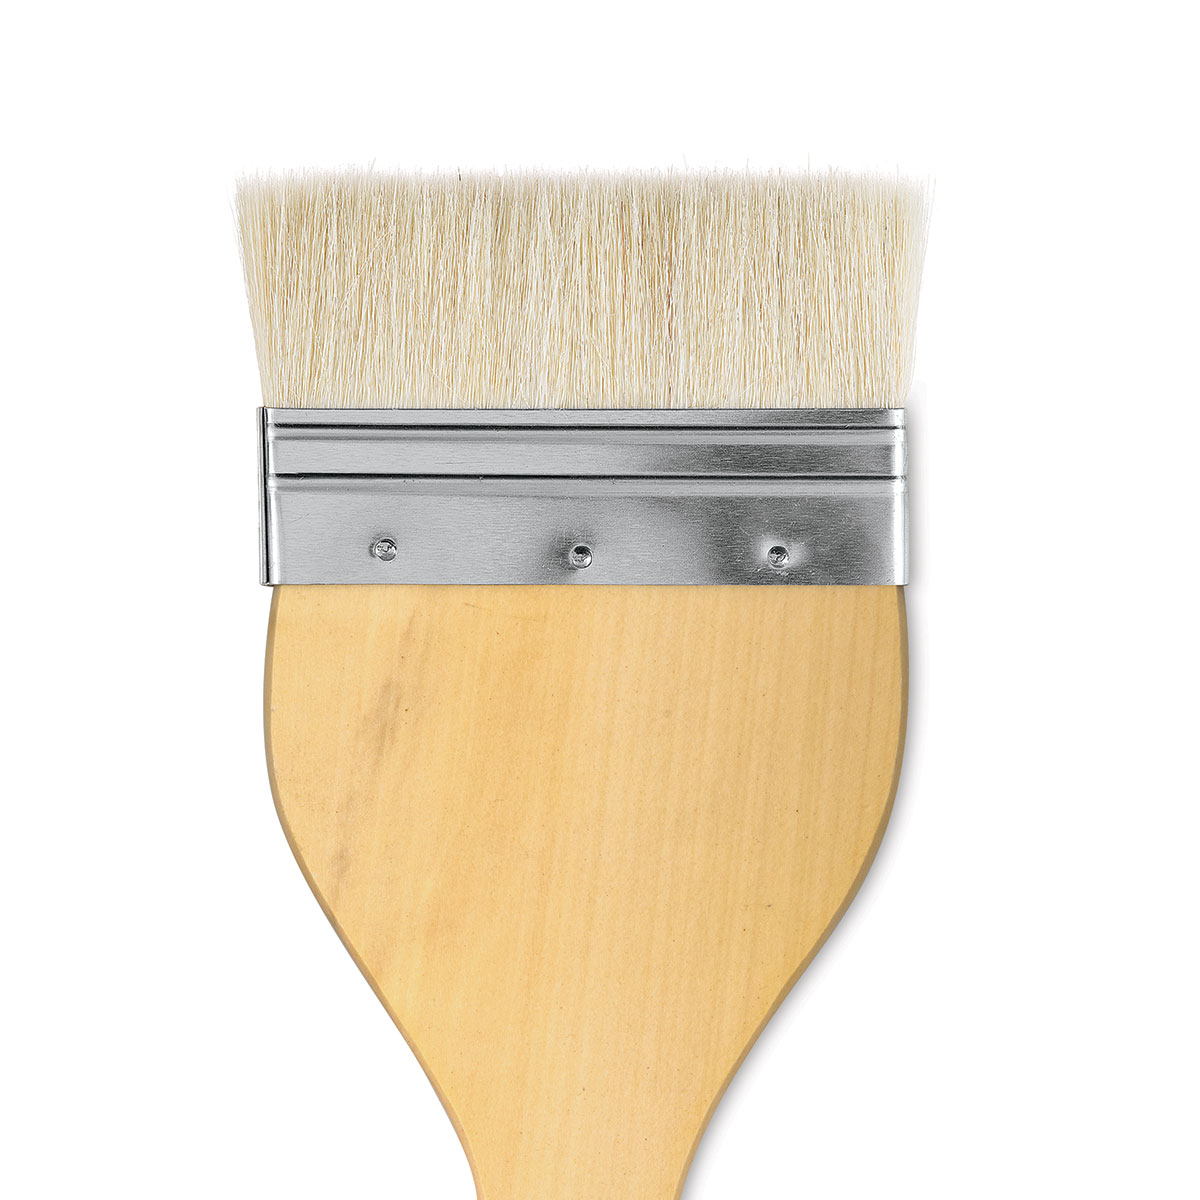 Yasutomo Hake Brush with Metal Ferrule - Artist & Craftsman Supply